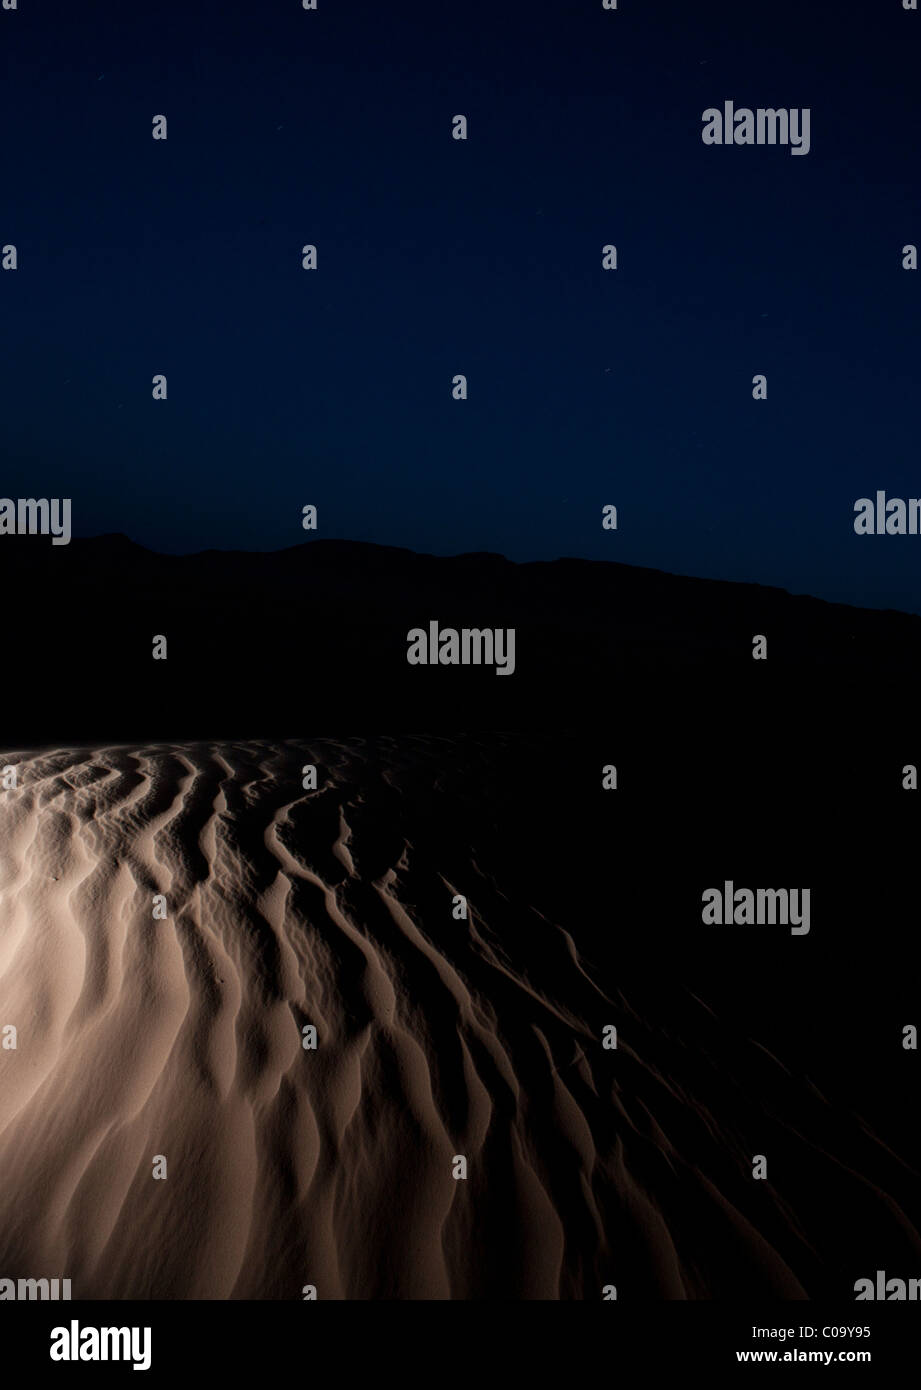 Dunes de sable (Ergs) dans Sahara causés par des processus éoliens de nuit montrant la texture laissée dans le sable par la force des vents. Le Maroc. Banque D'Images